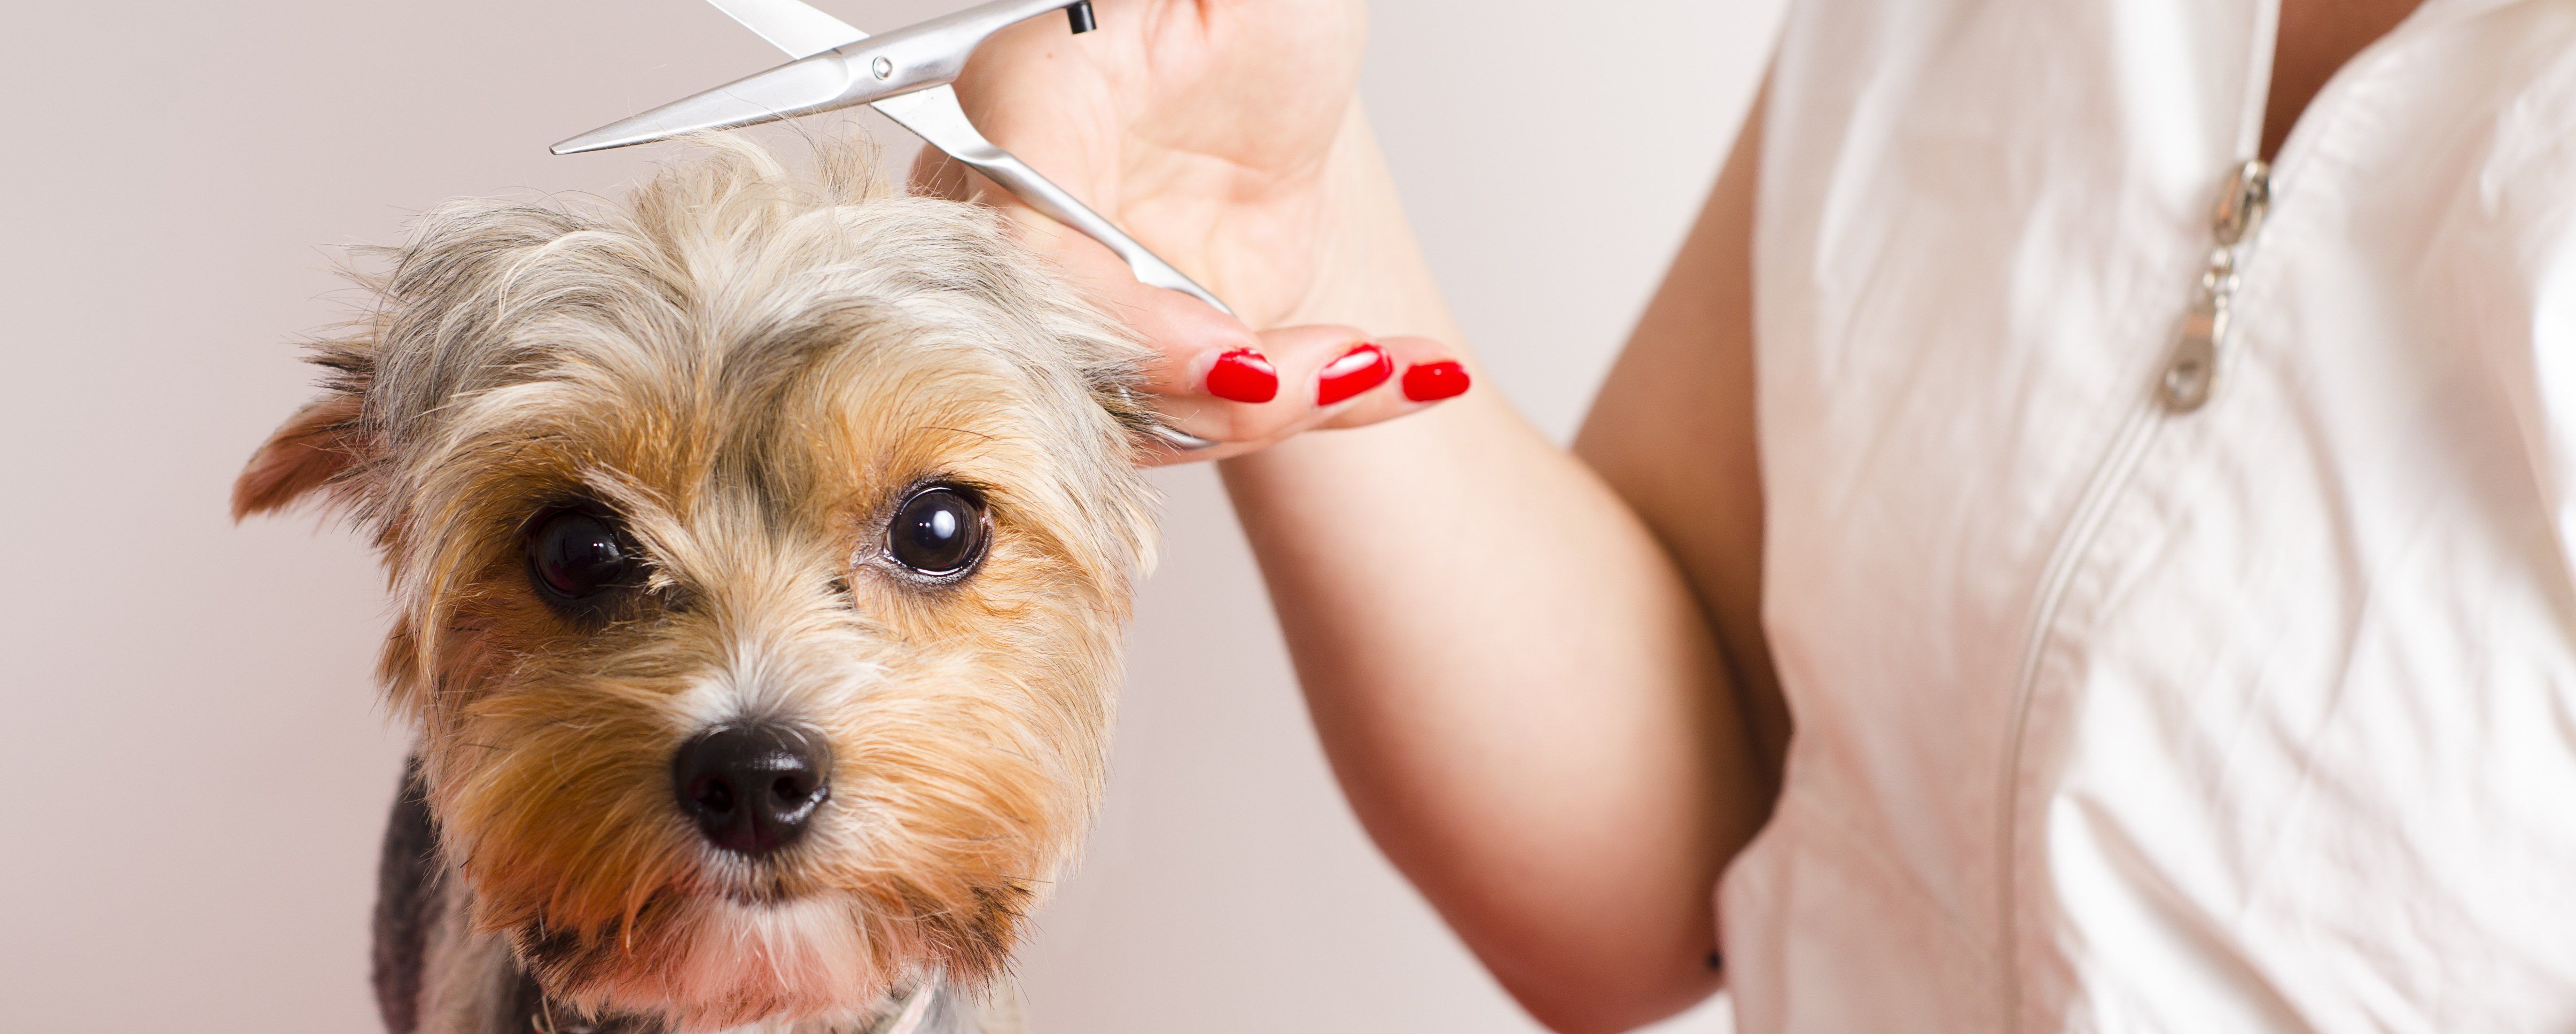 Descubre los servicios de peluquería canina en Madrid